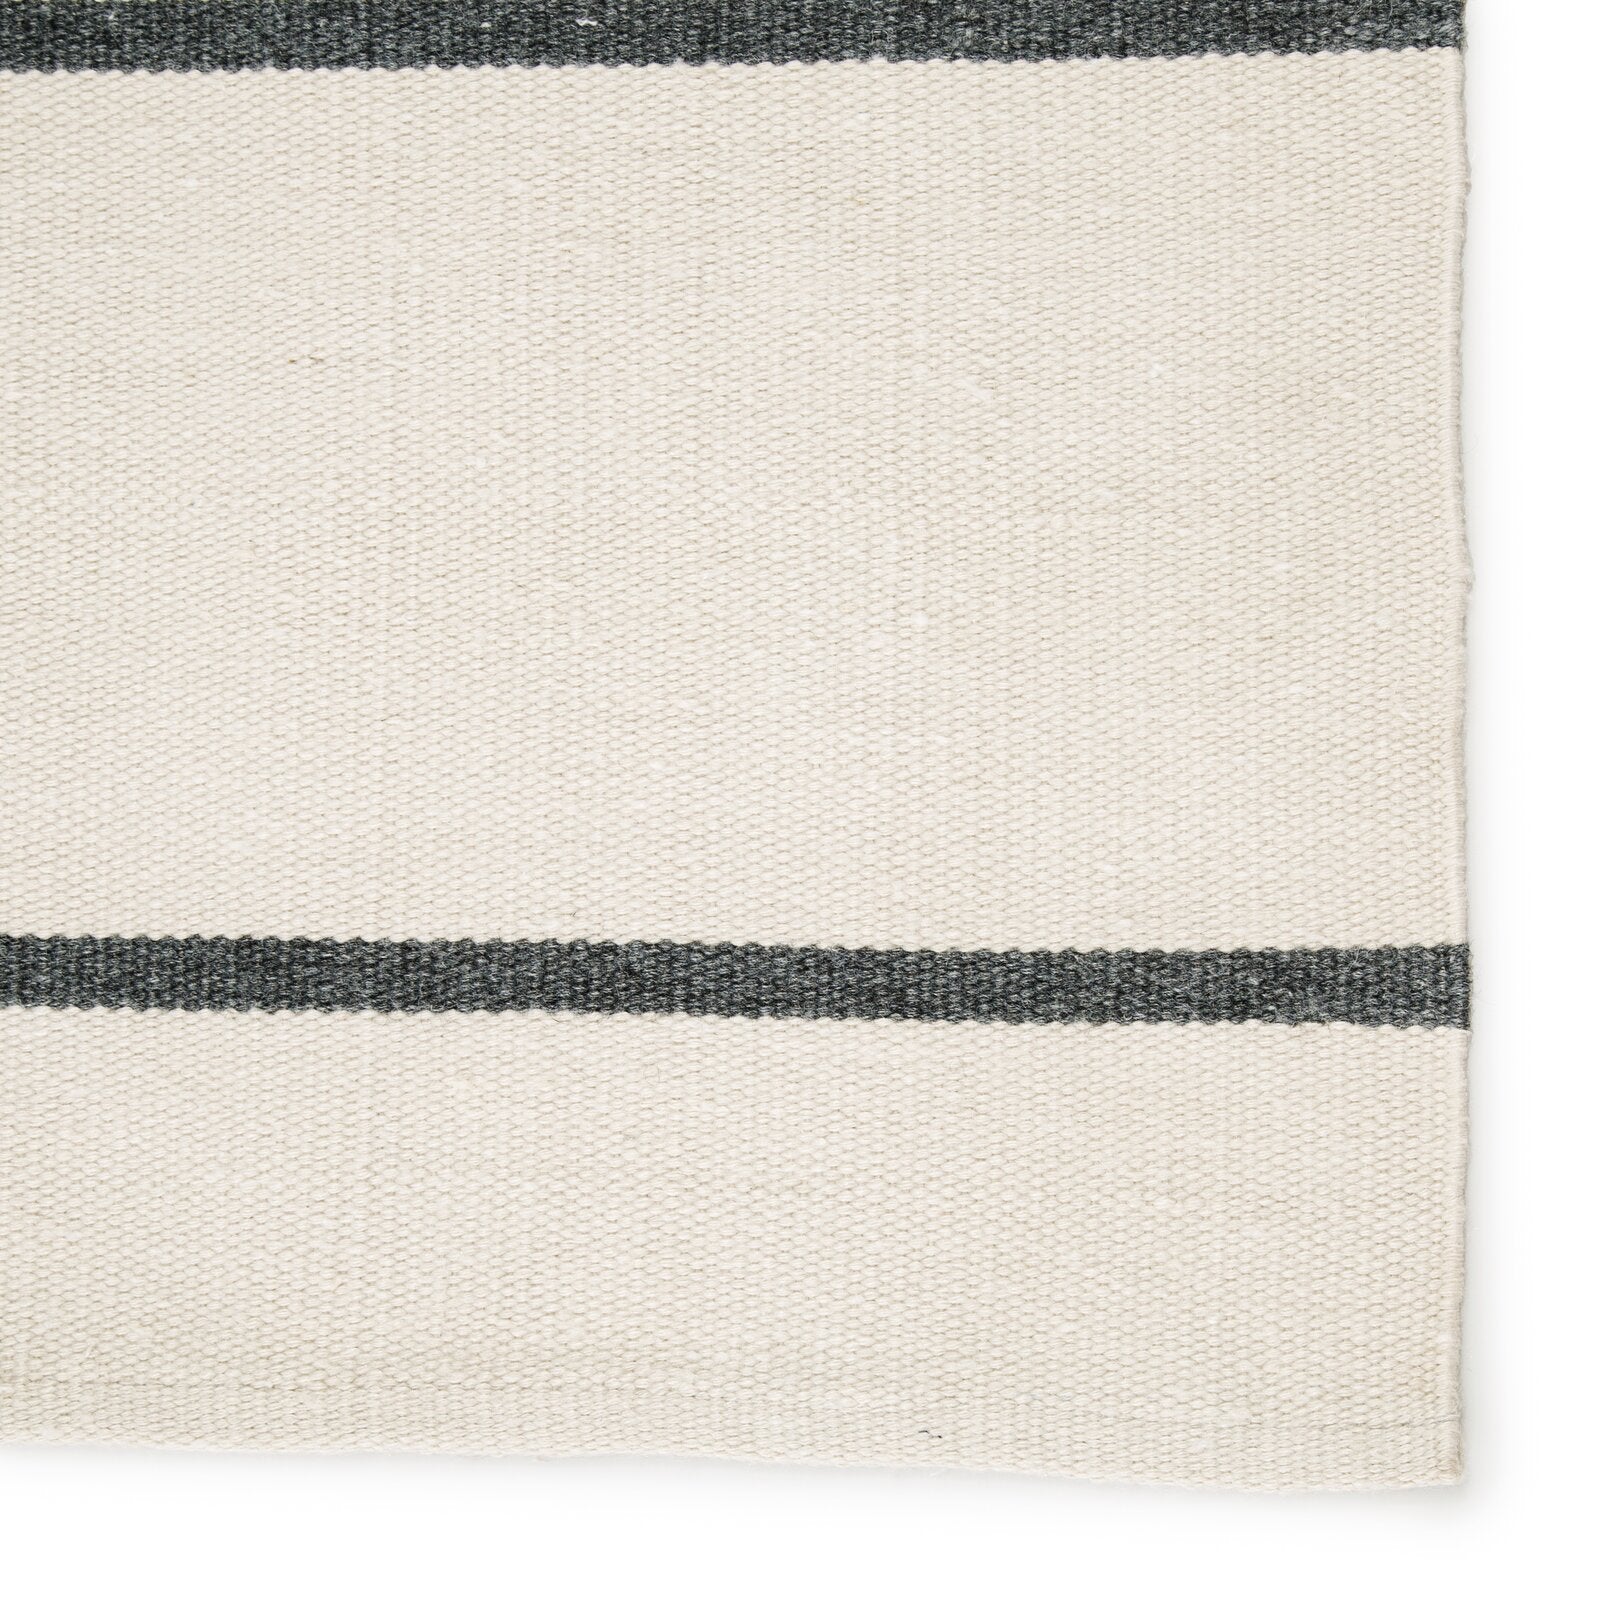 Striped Handmade 7’4”x9’6” Ivory/Dark Gray Indoor / Outdoor Area Rug CL295